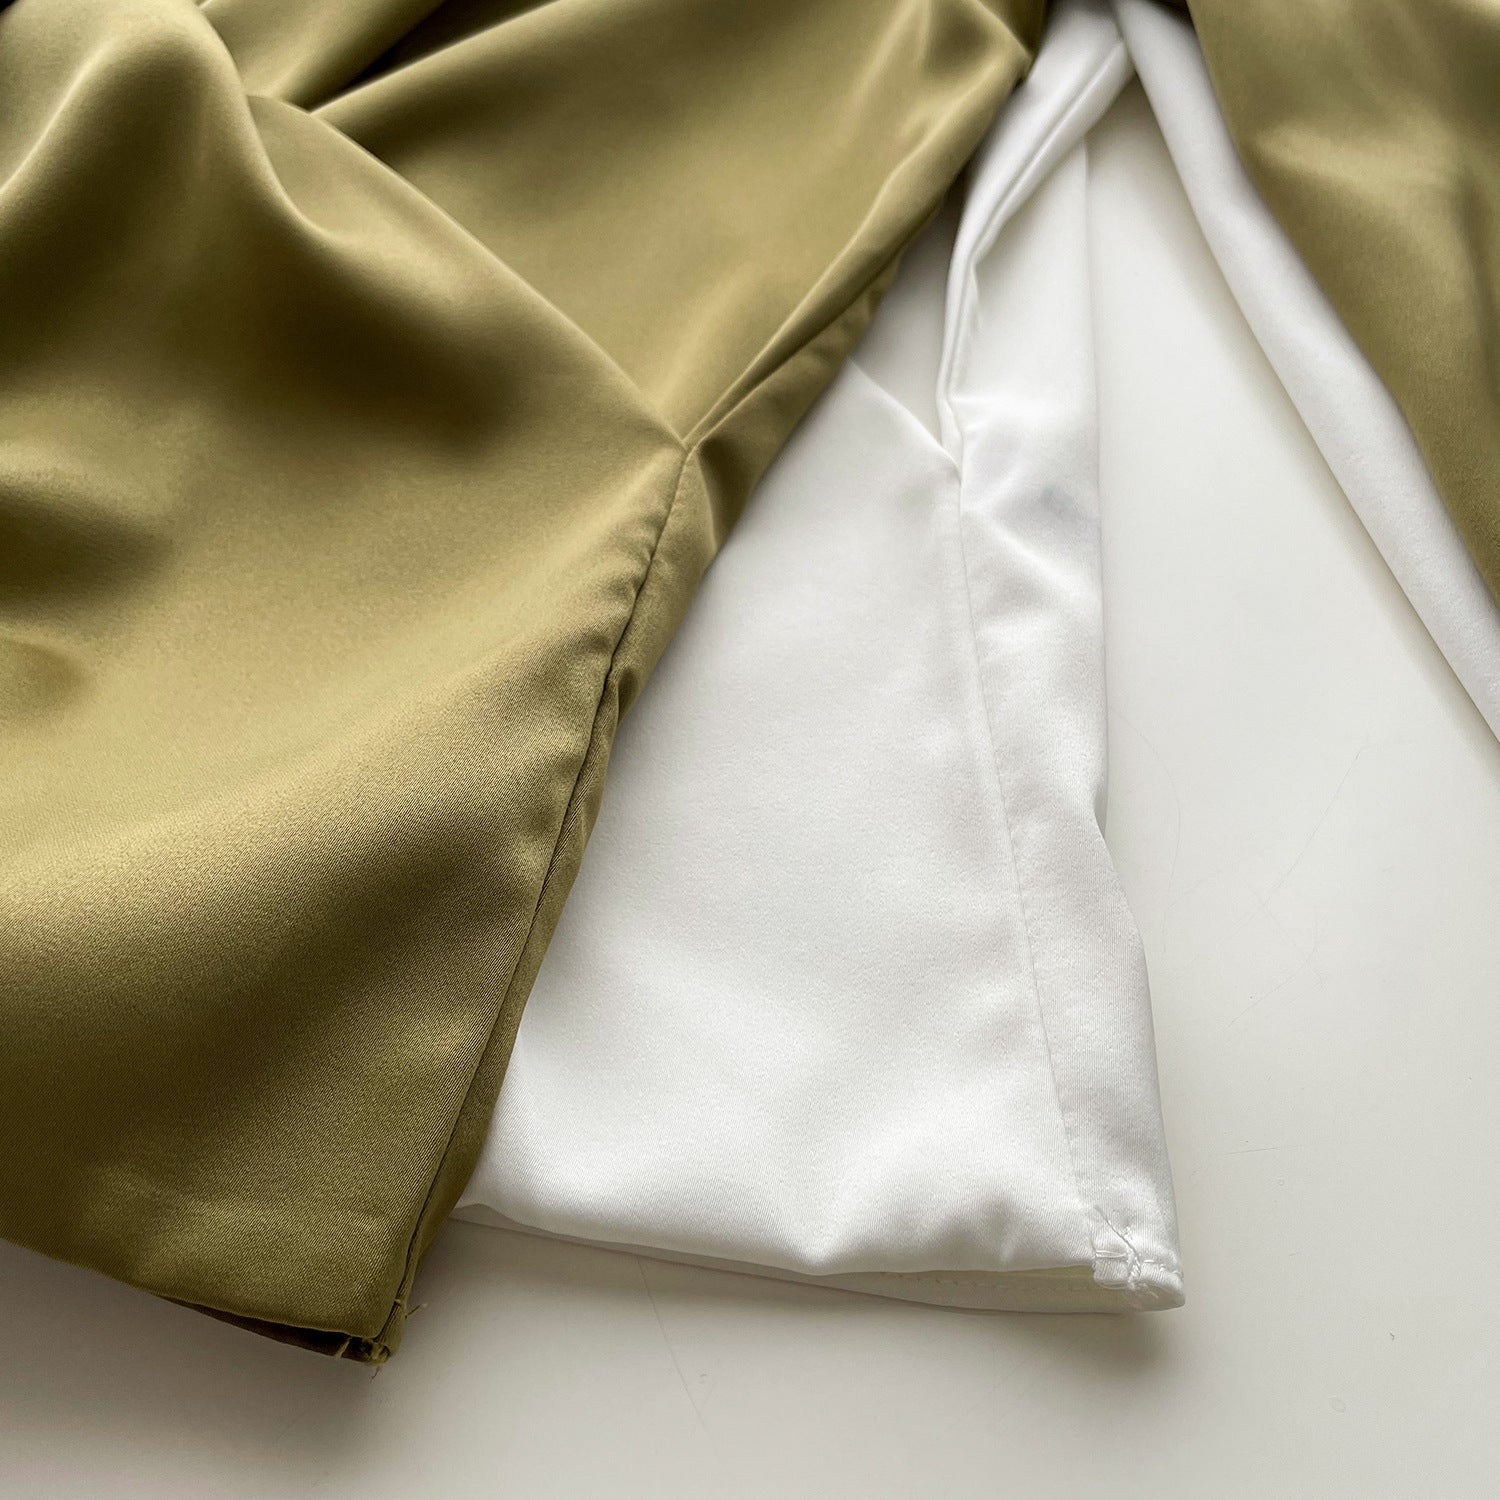 Elegant Satin Long Sleeves Office Lady Shirts-Shirts & Tops-Free Shipping at meselling99